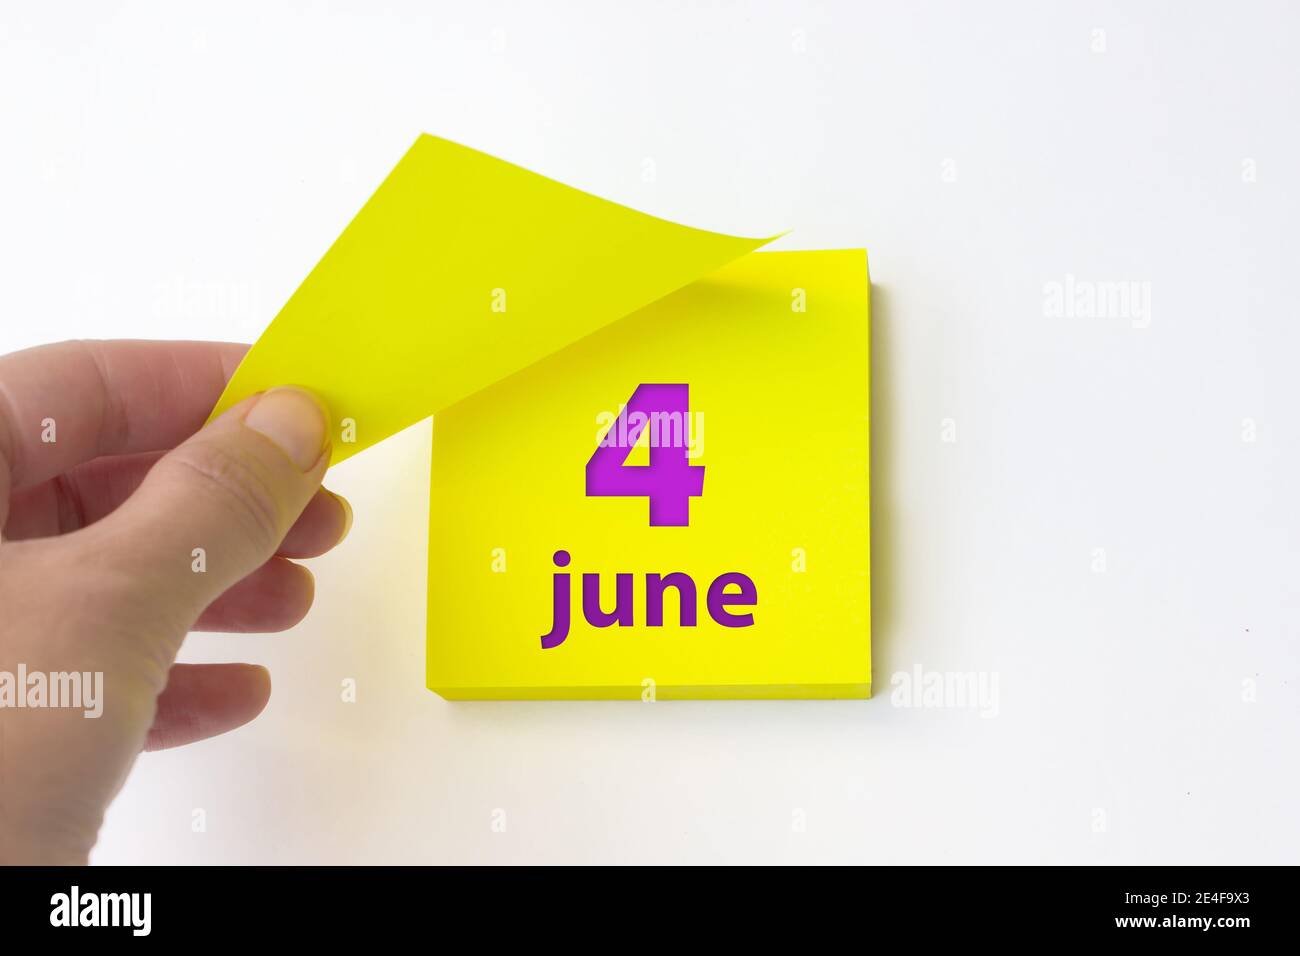 4 juin. Jour 4 du mois, date du calendrier. La main se défait de la feuille jaune du calendrier. Concept mois d'été, jour de l'année Banque D'Images